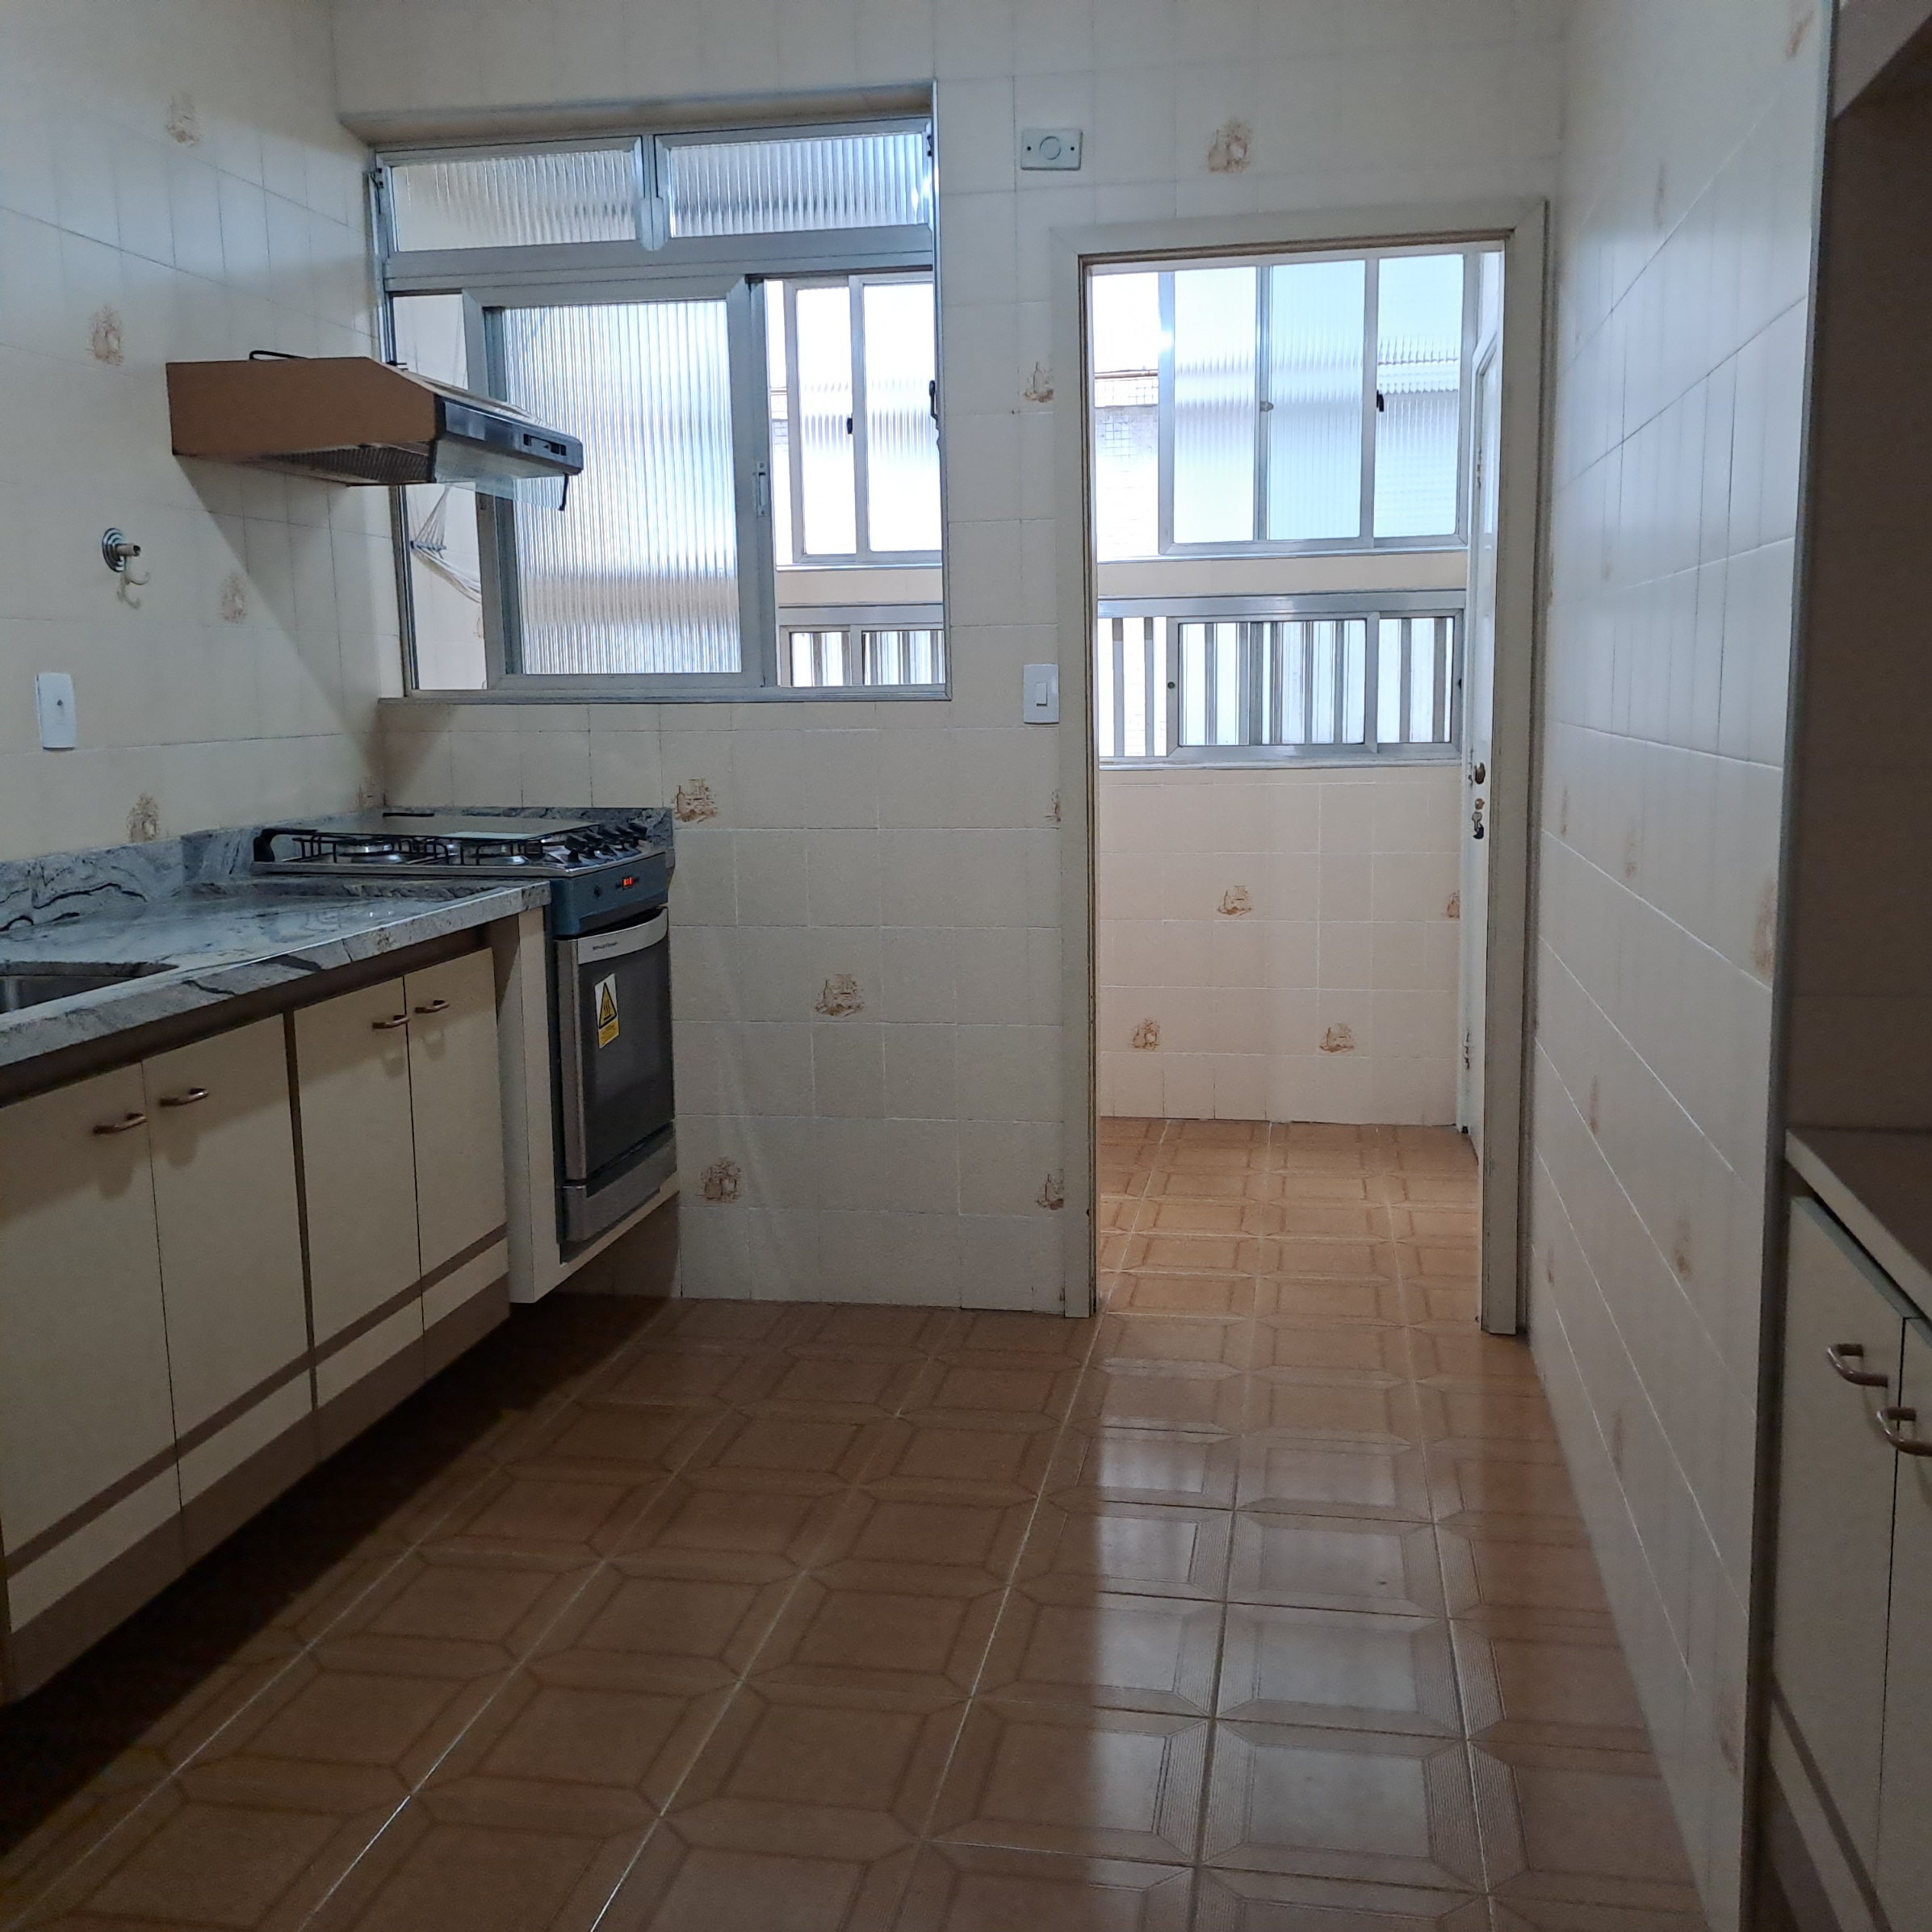 Apartamento com dois dormitórios Boqueirão - Santos - SP 2